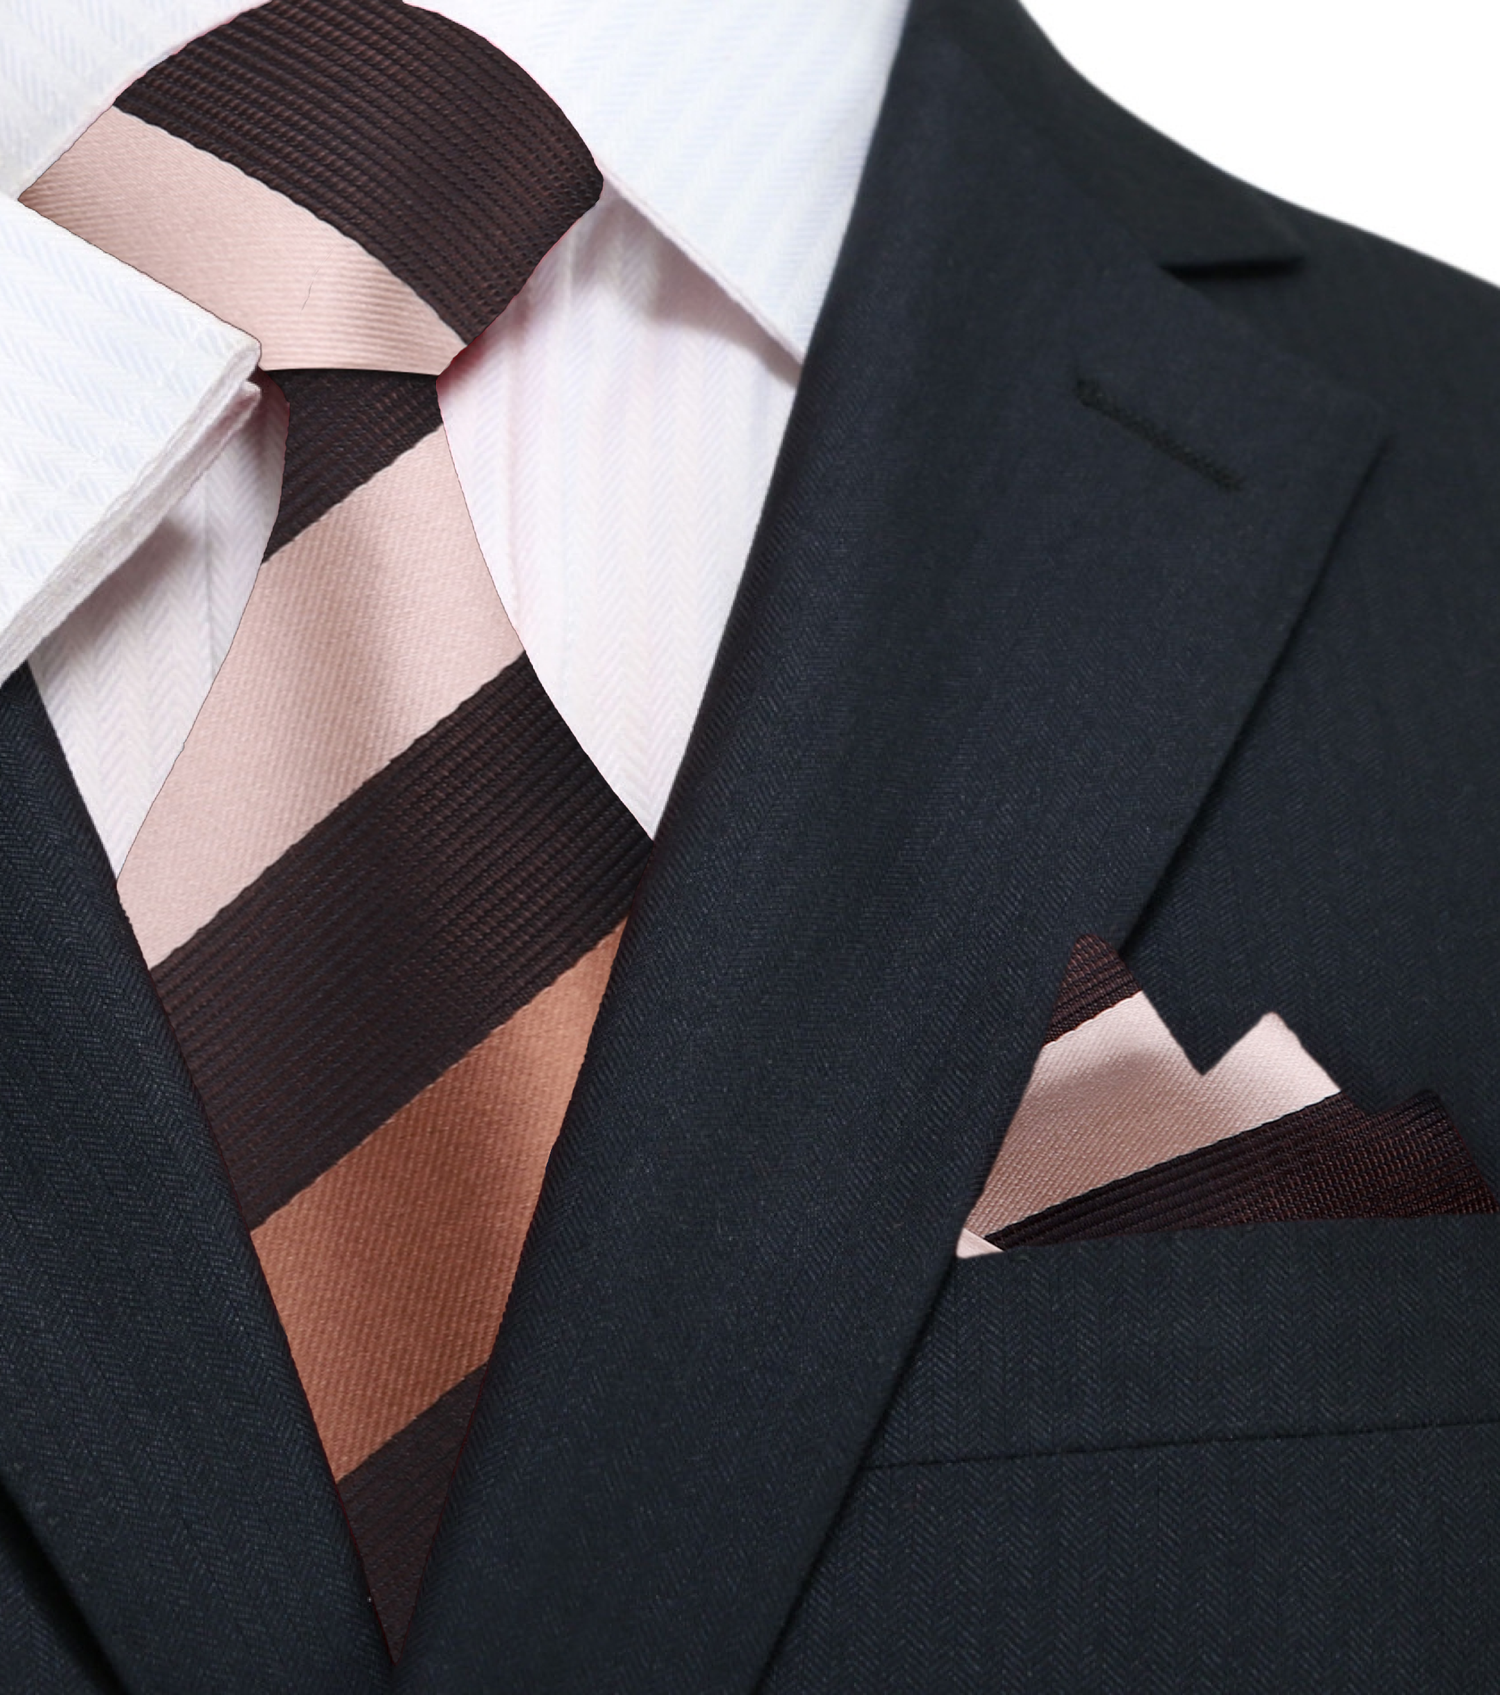 A Chocolate, Brown Stripe Pattern Silk Necktie, Pocket Square